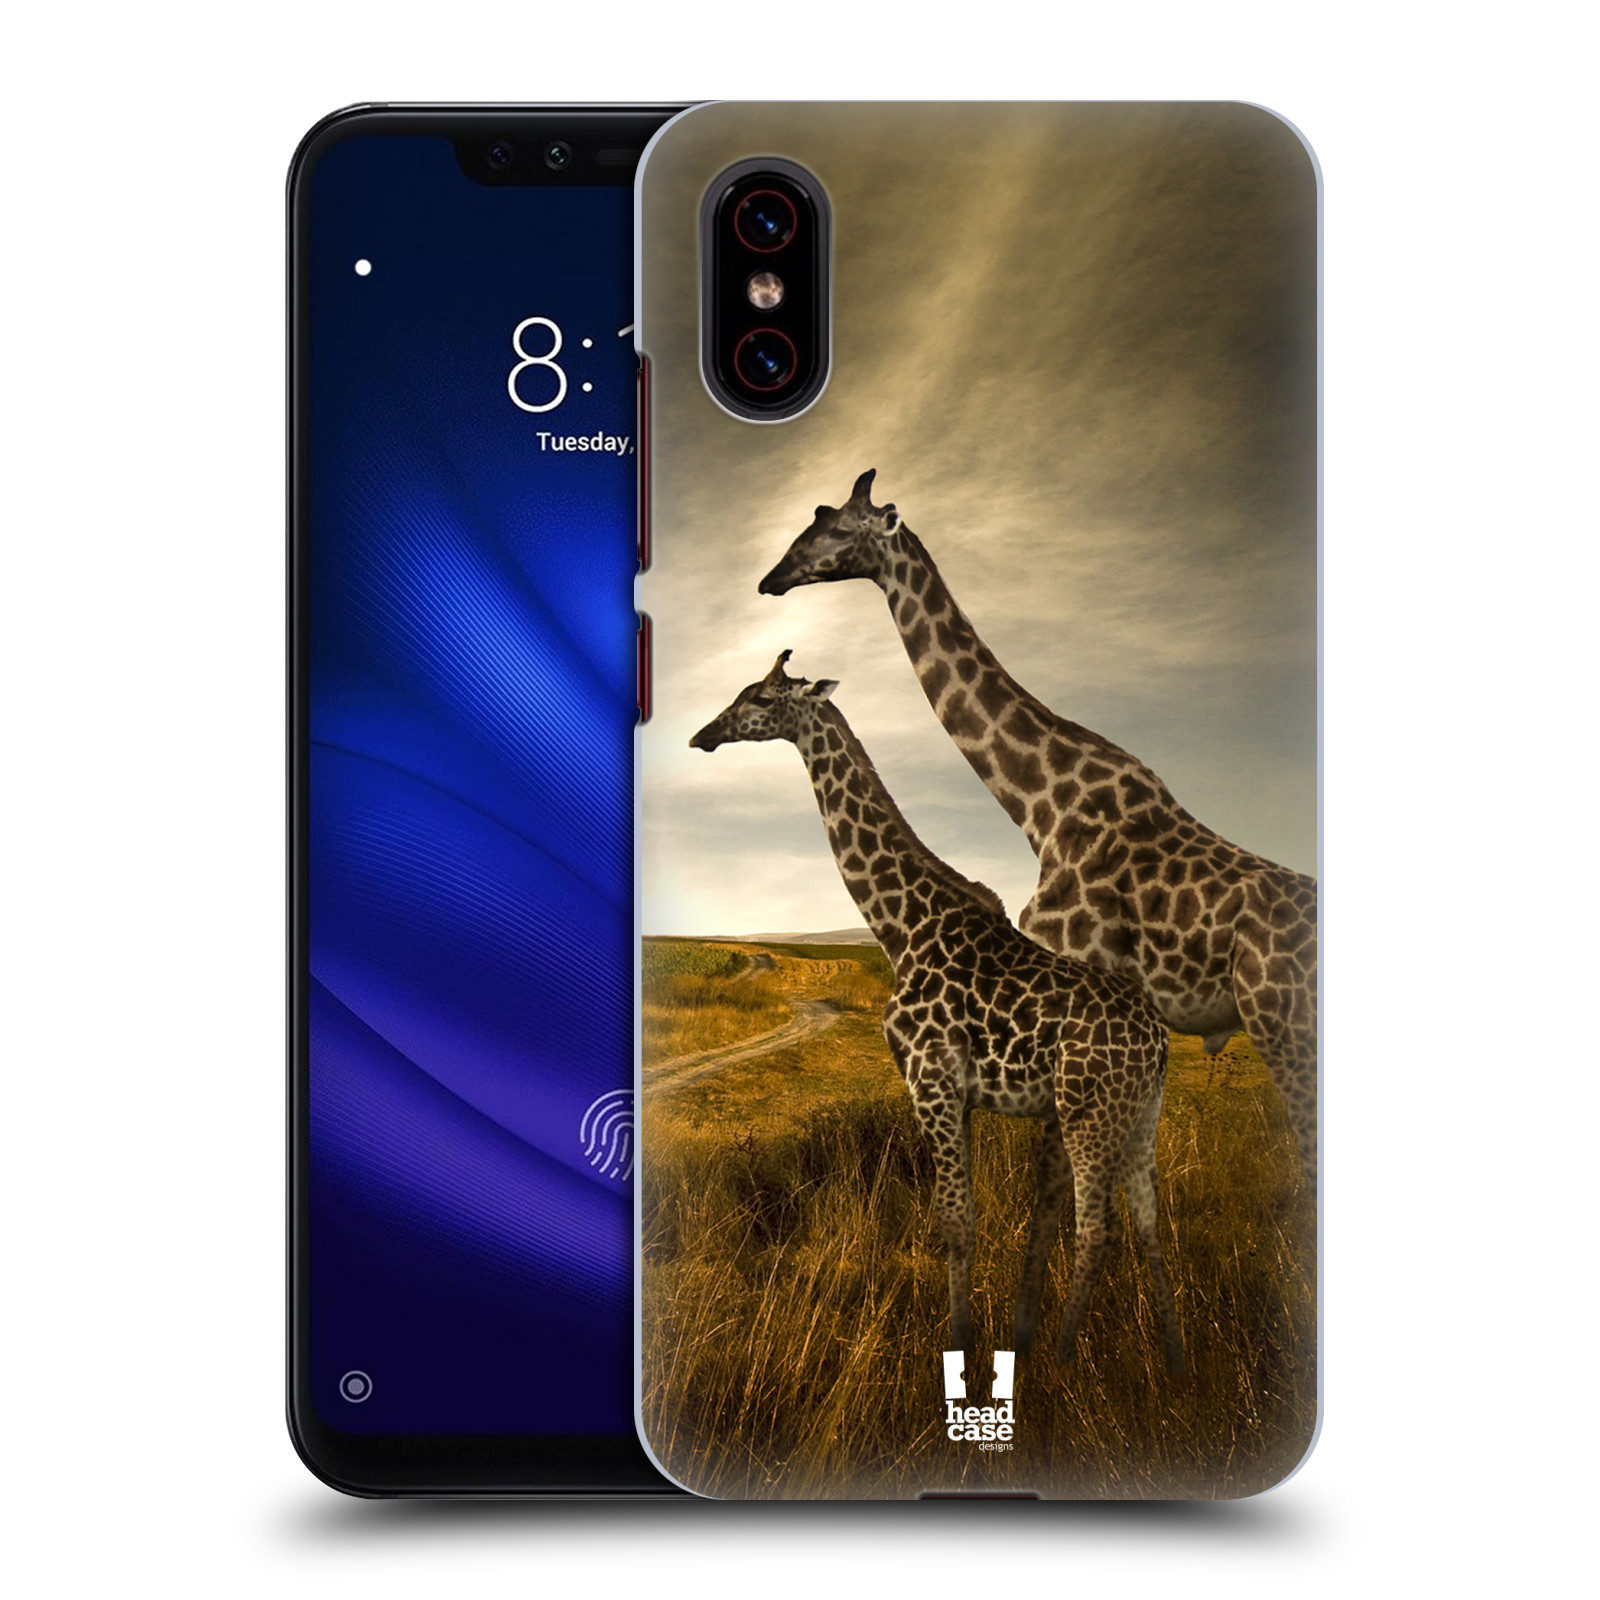 Zadní obal pro mobil Xiaomi Mi 8 PRO - HEAD CASE - Svět zvířat žirafy